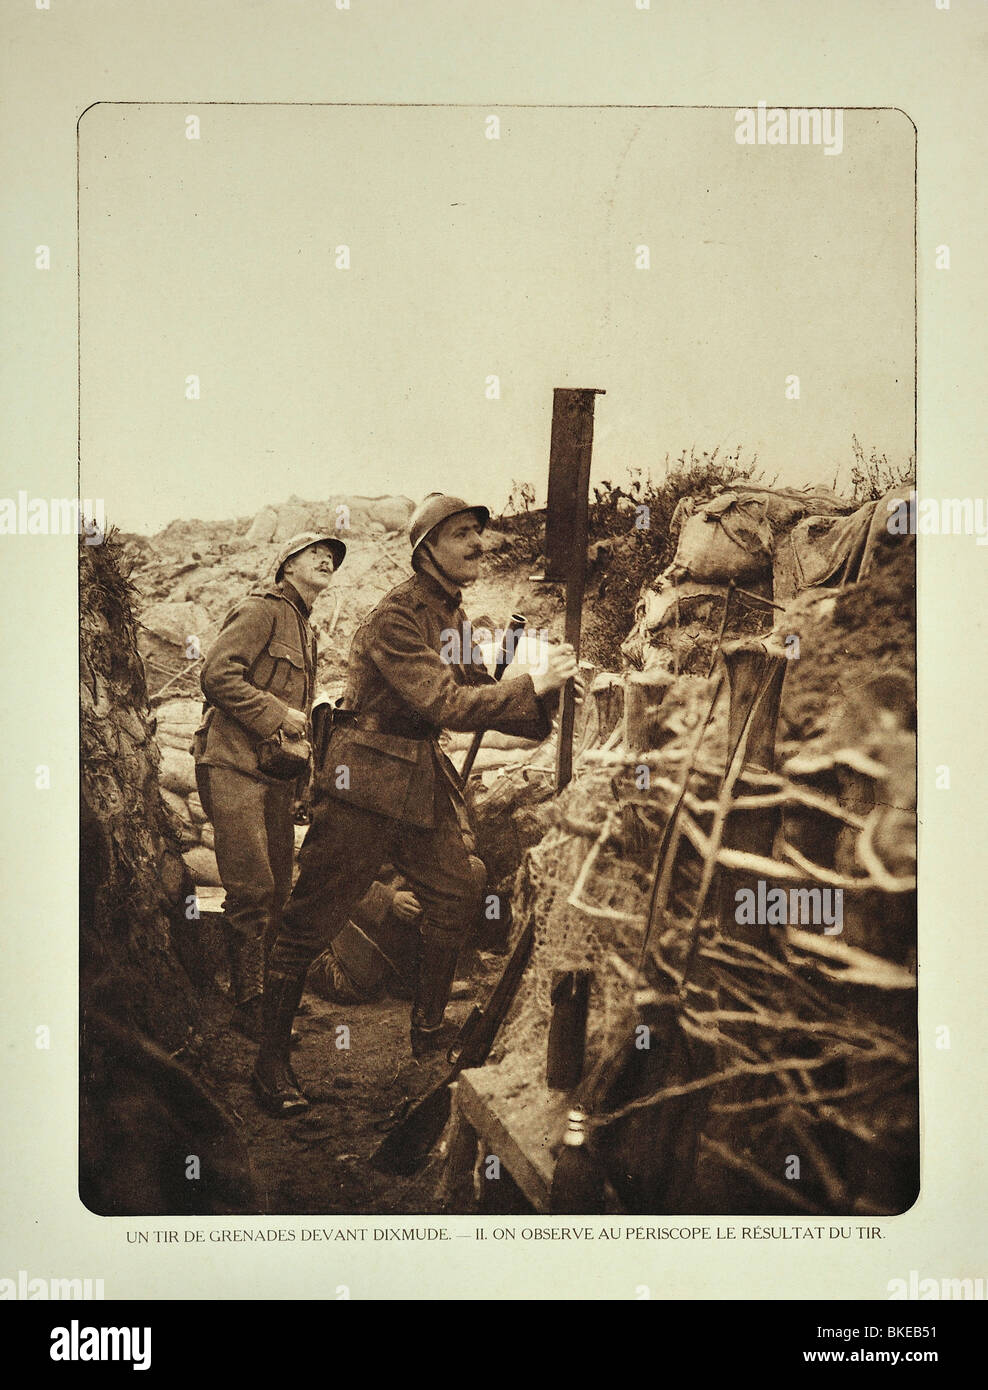 Soldato in trincea con periscopio controllo dove granate sciopero nel campo di battaglia a Diksmuide, Fiandre Occidentali durante la prima guerra mondiale, Belgio Foto Stock